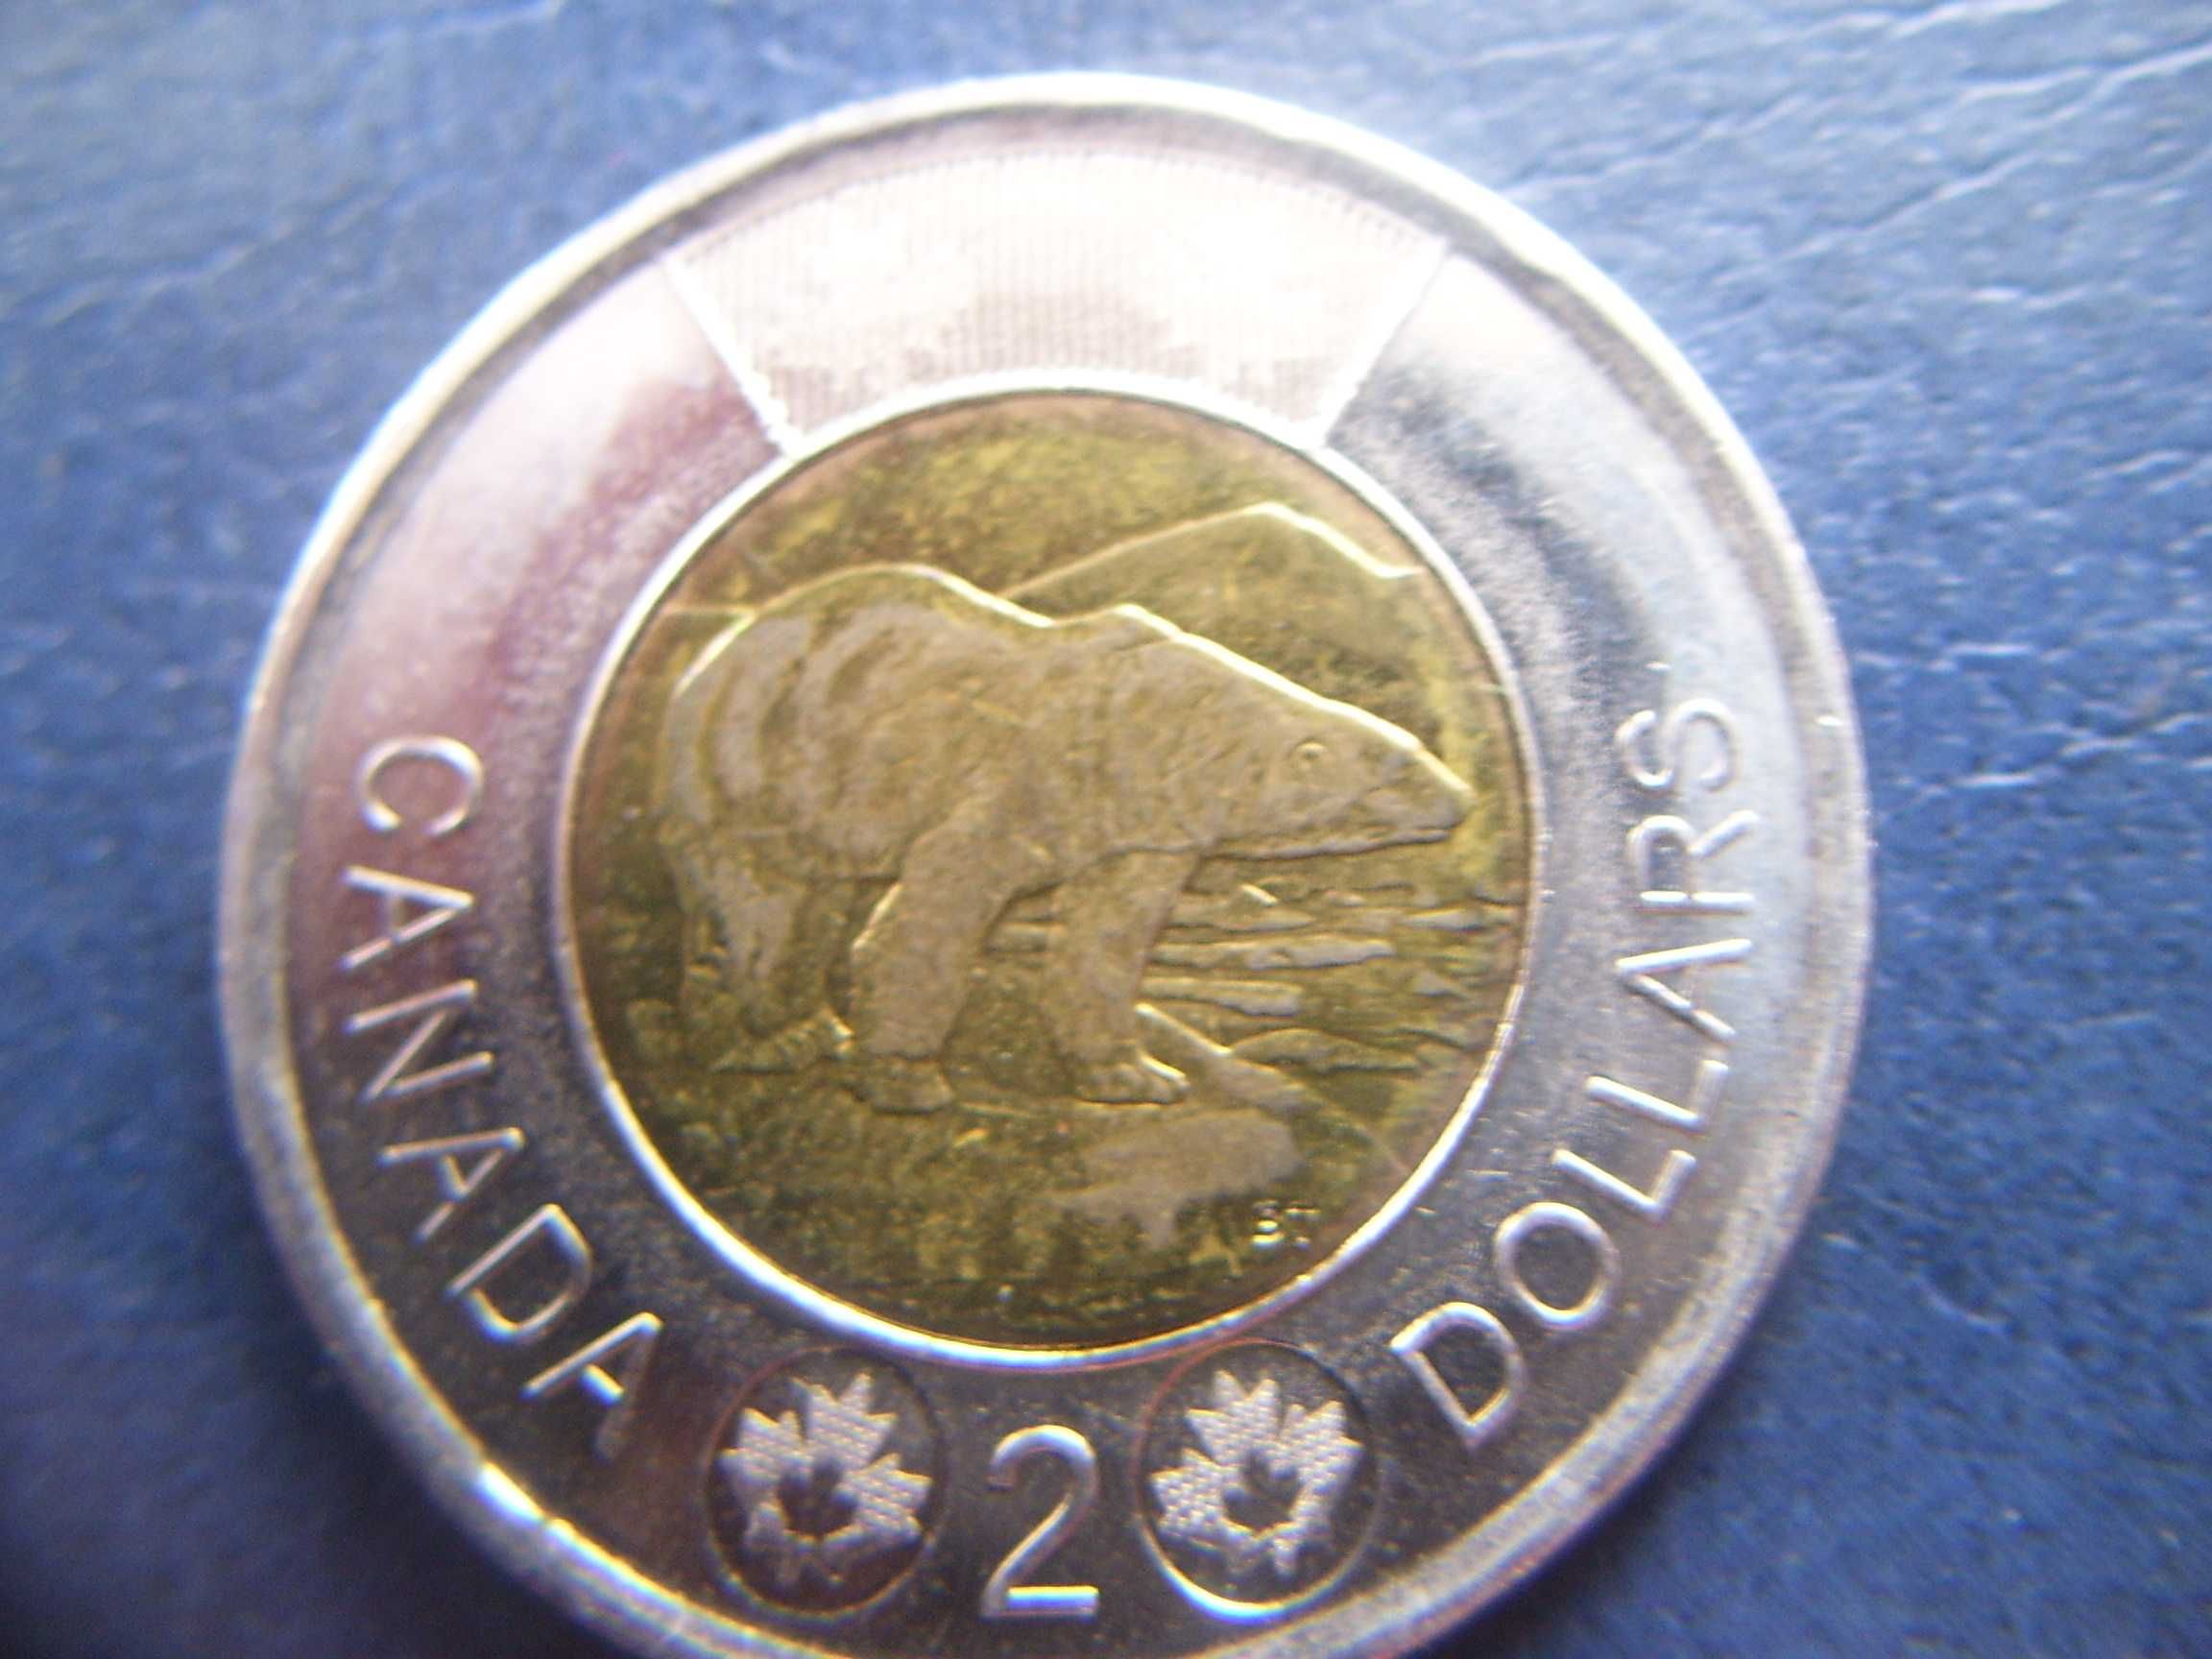 Stare monety 2 dolary 2012 Kanada